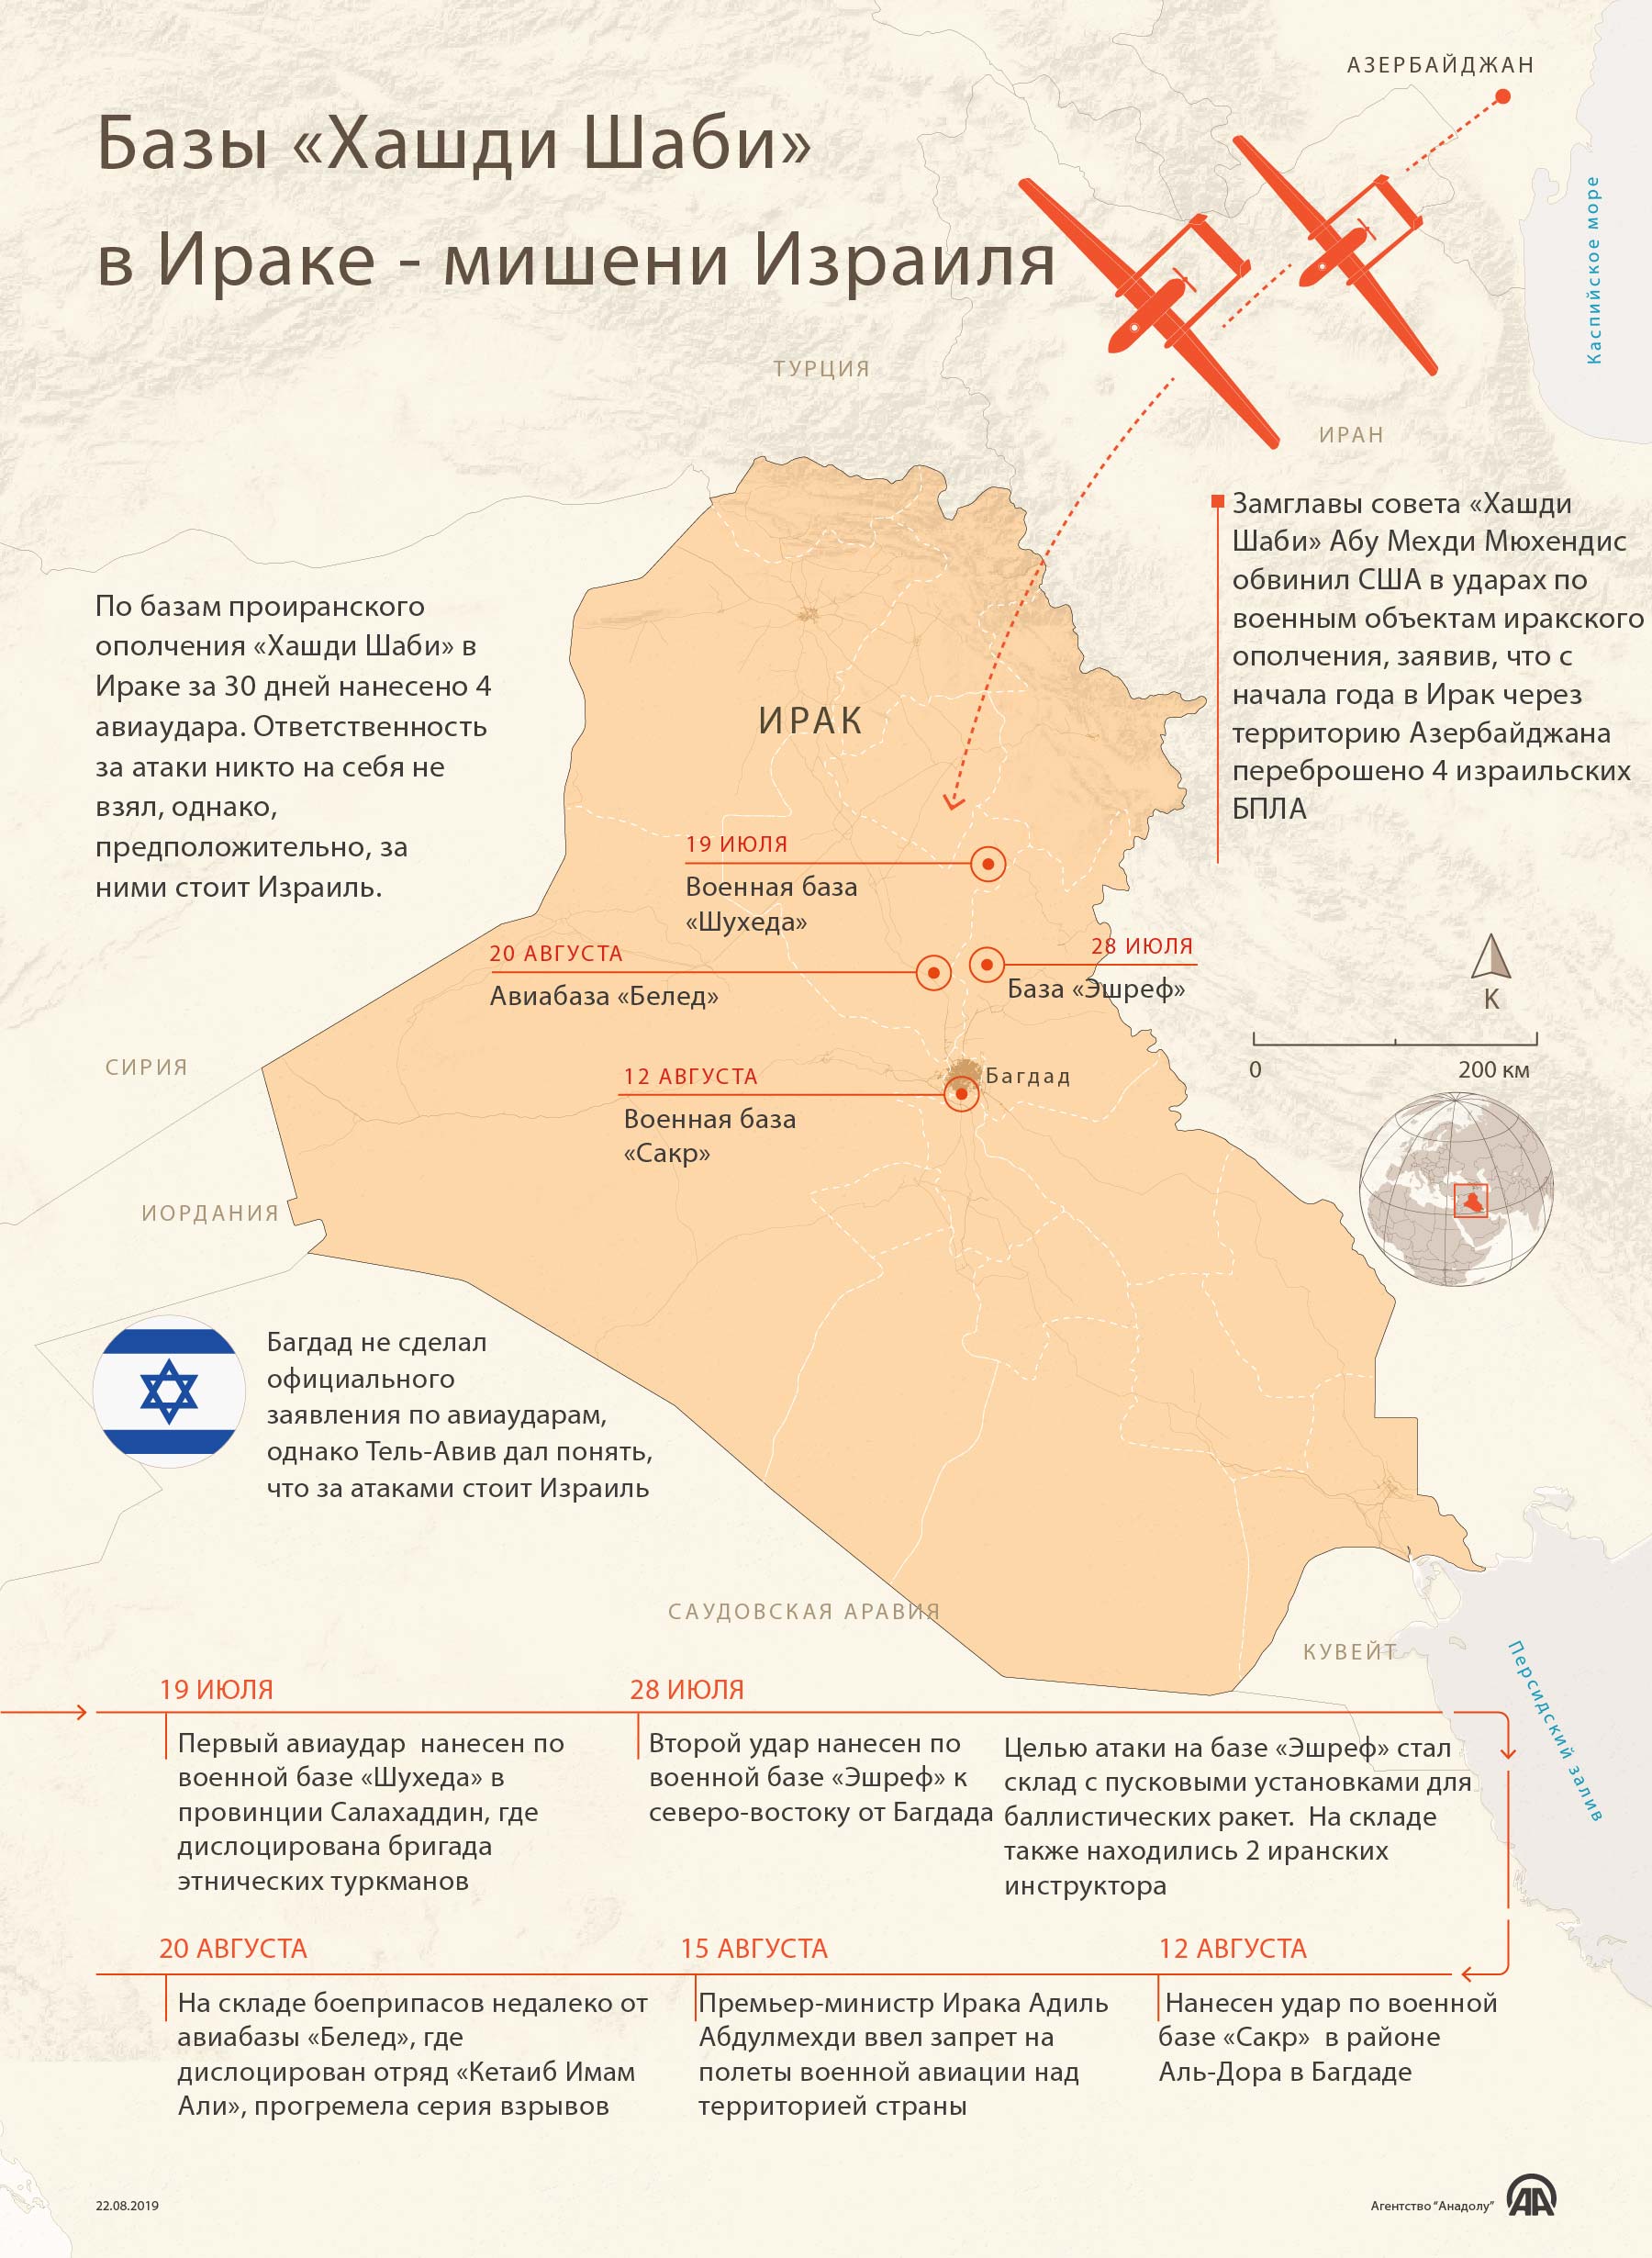 Базы «Хашди Шаби» в Ираке - мишени Израиля